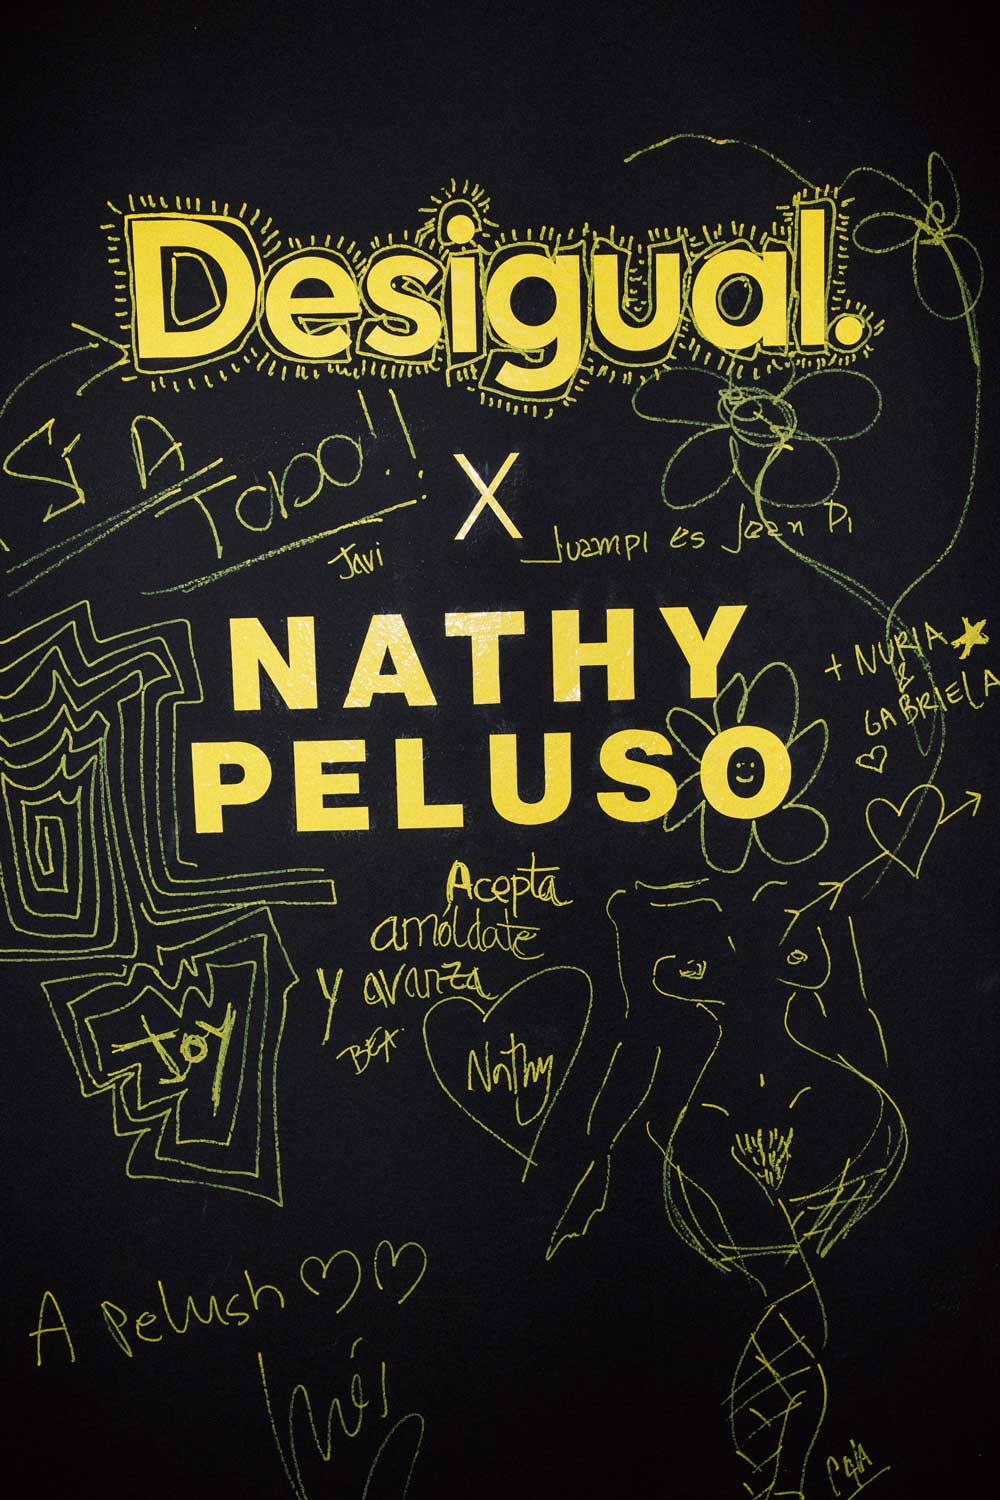 Nathy Peluso al desnudo para la marca de moda Desigual